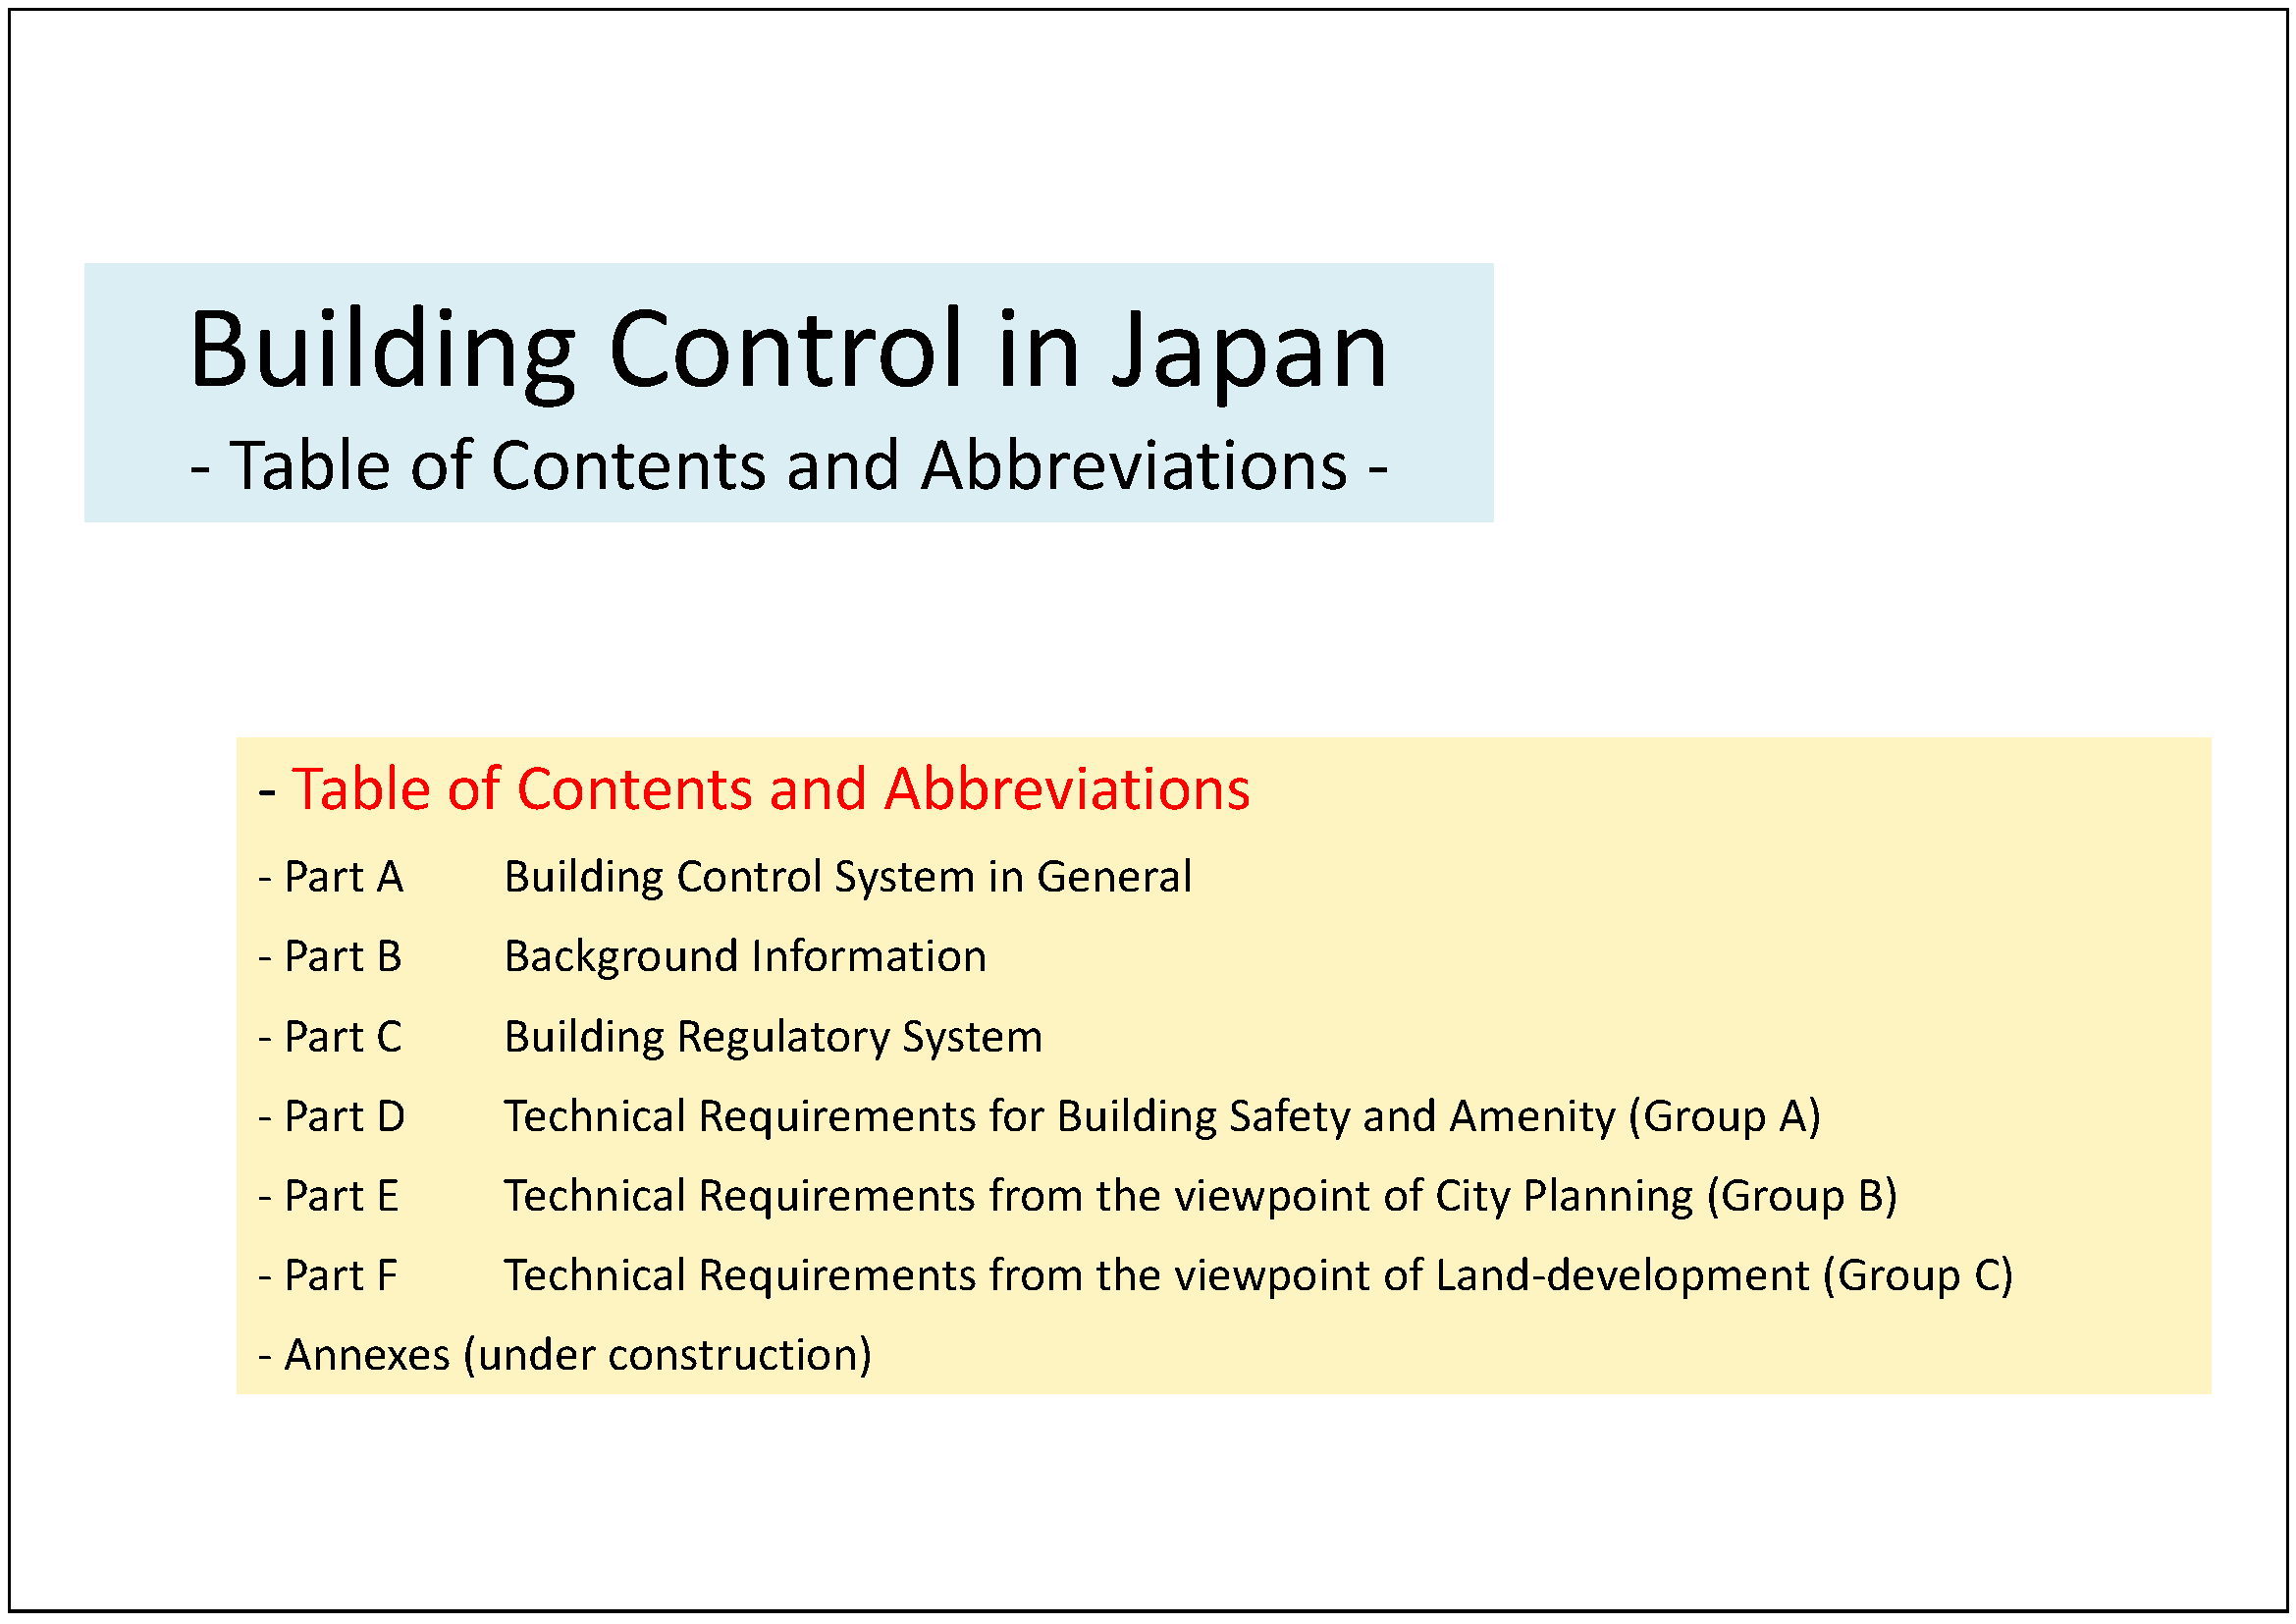 建築基準法の概要 「Introduction to the Building Standard Law (最新版) -Building Control in Japan-」